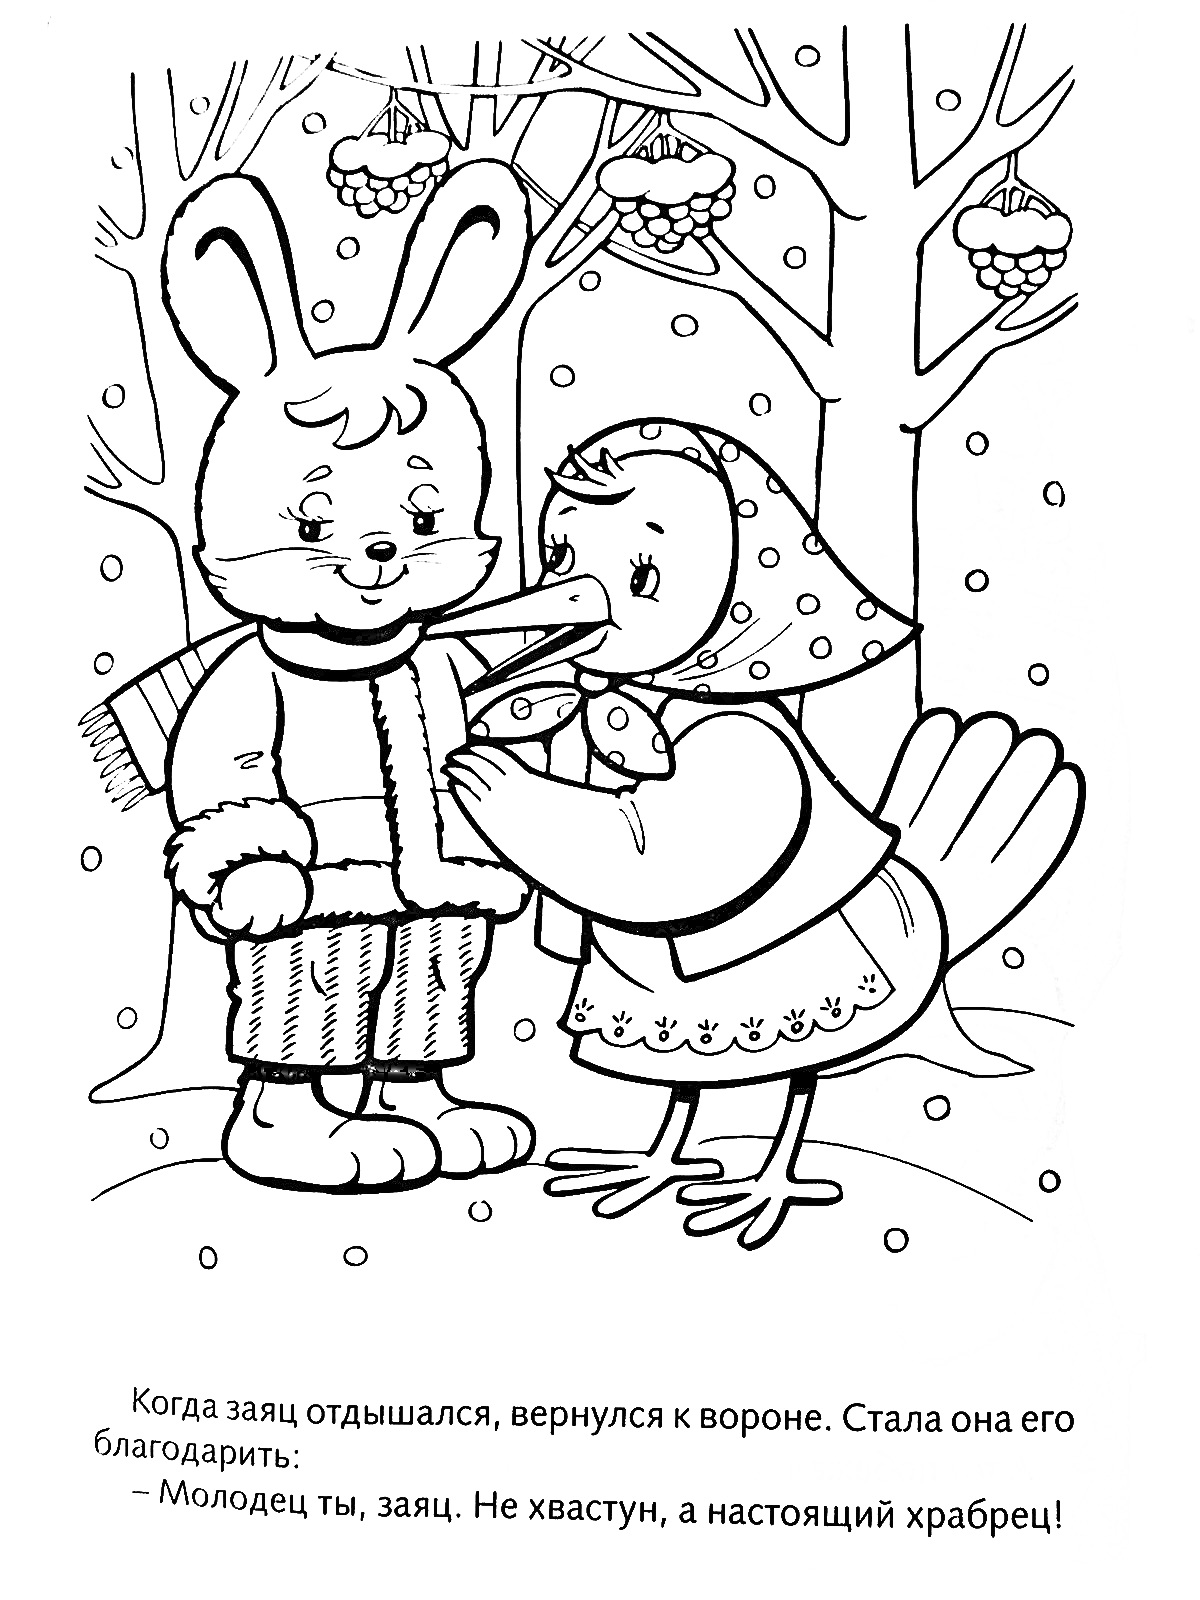 Заяц и ворона в зимнем лесу, ворона благодарит зайца